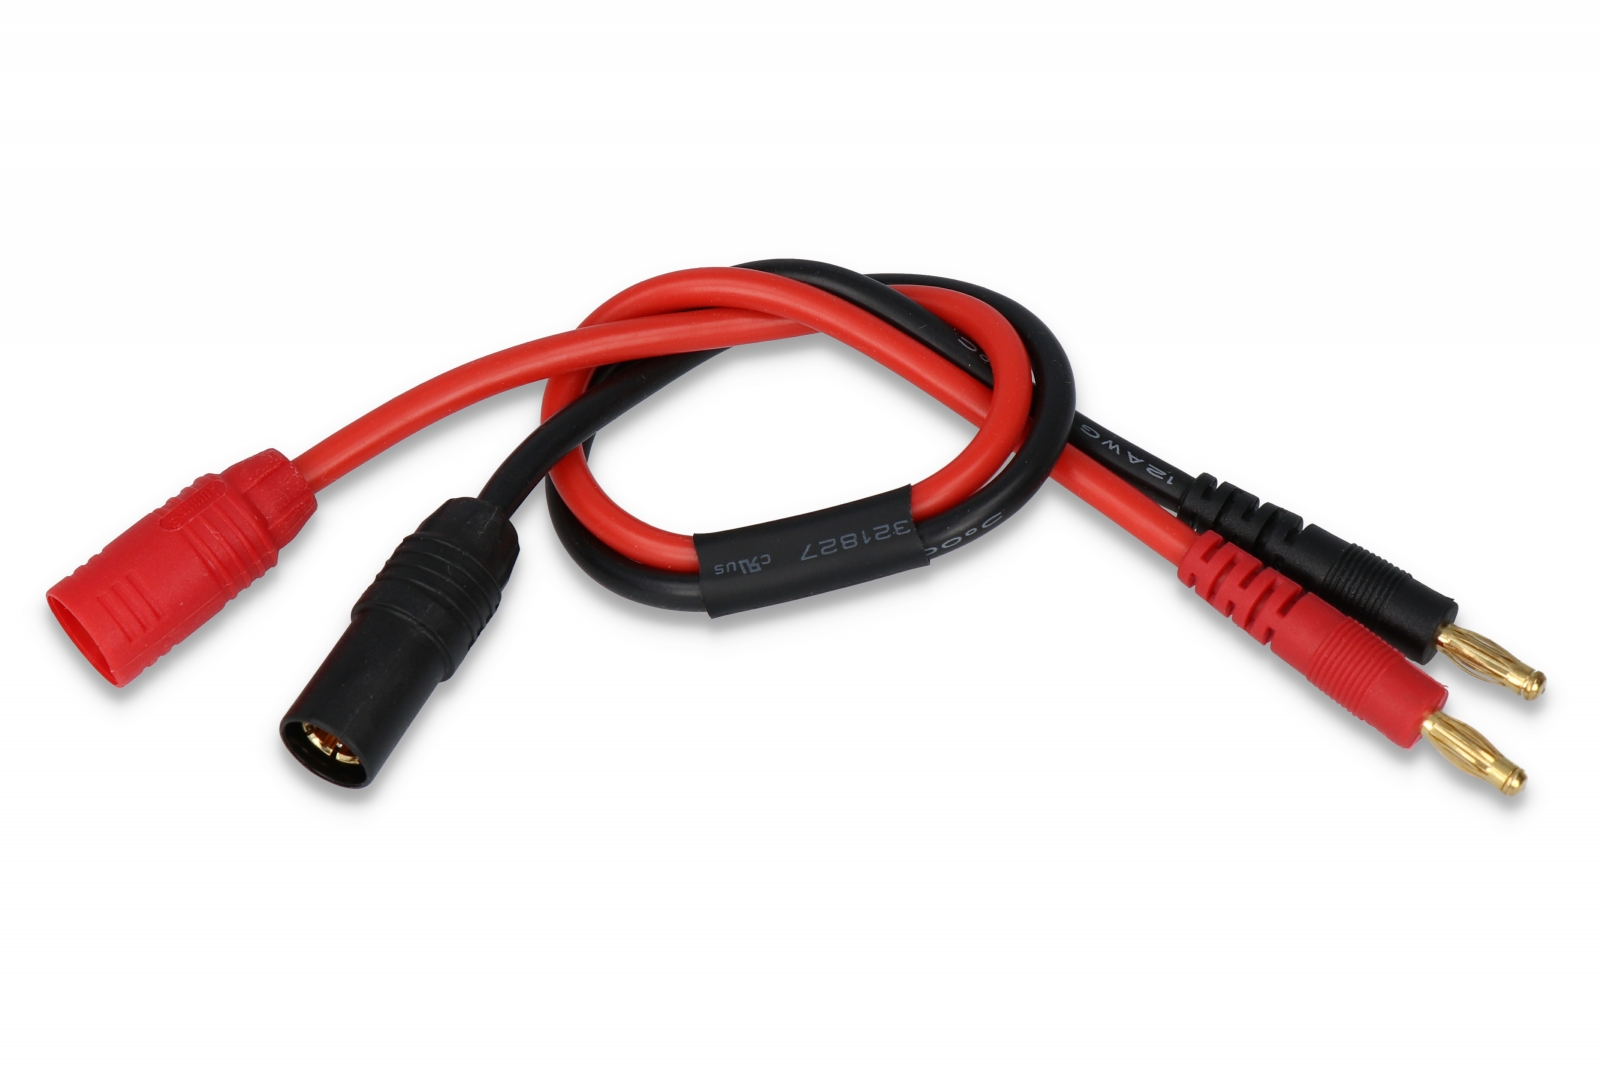 SLS AS150 Ladekabel - Lipo online bei Stefansliposhop kaufen Akkus Modellbau